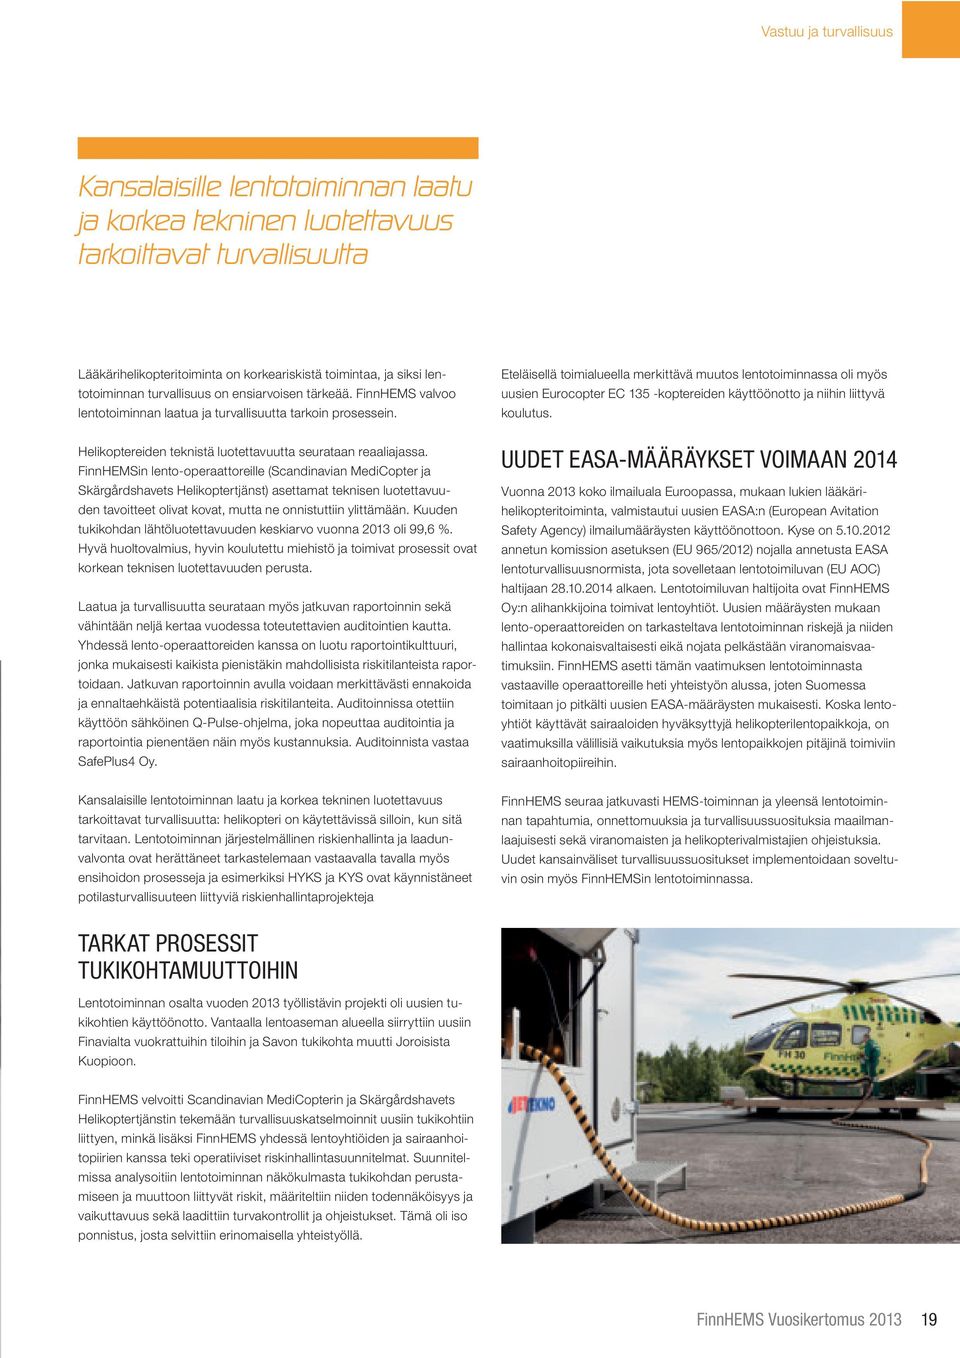 FinnHEMSin lento-operaattoreille (Scandinavian MediCopter ja Skärgårdshavets Helikoptertjänst) asettamat teknisen luotettavuuden tavoitteet olivat kovat, mutta ne onnistuttiin ylittämään.